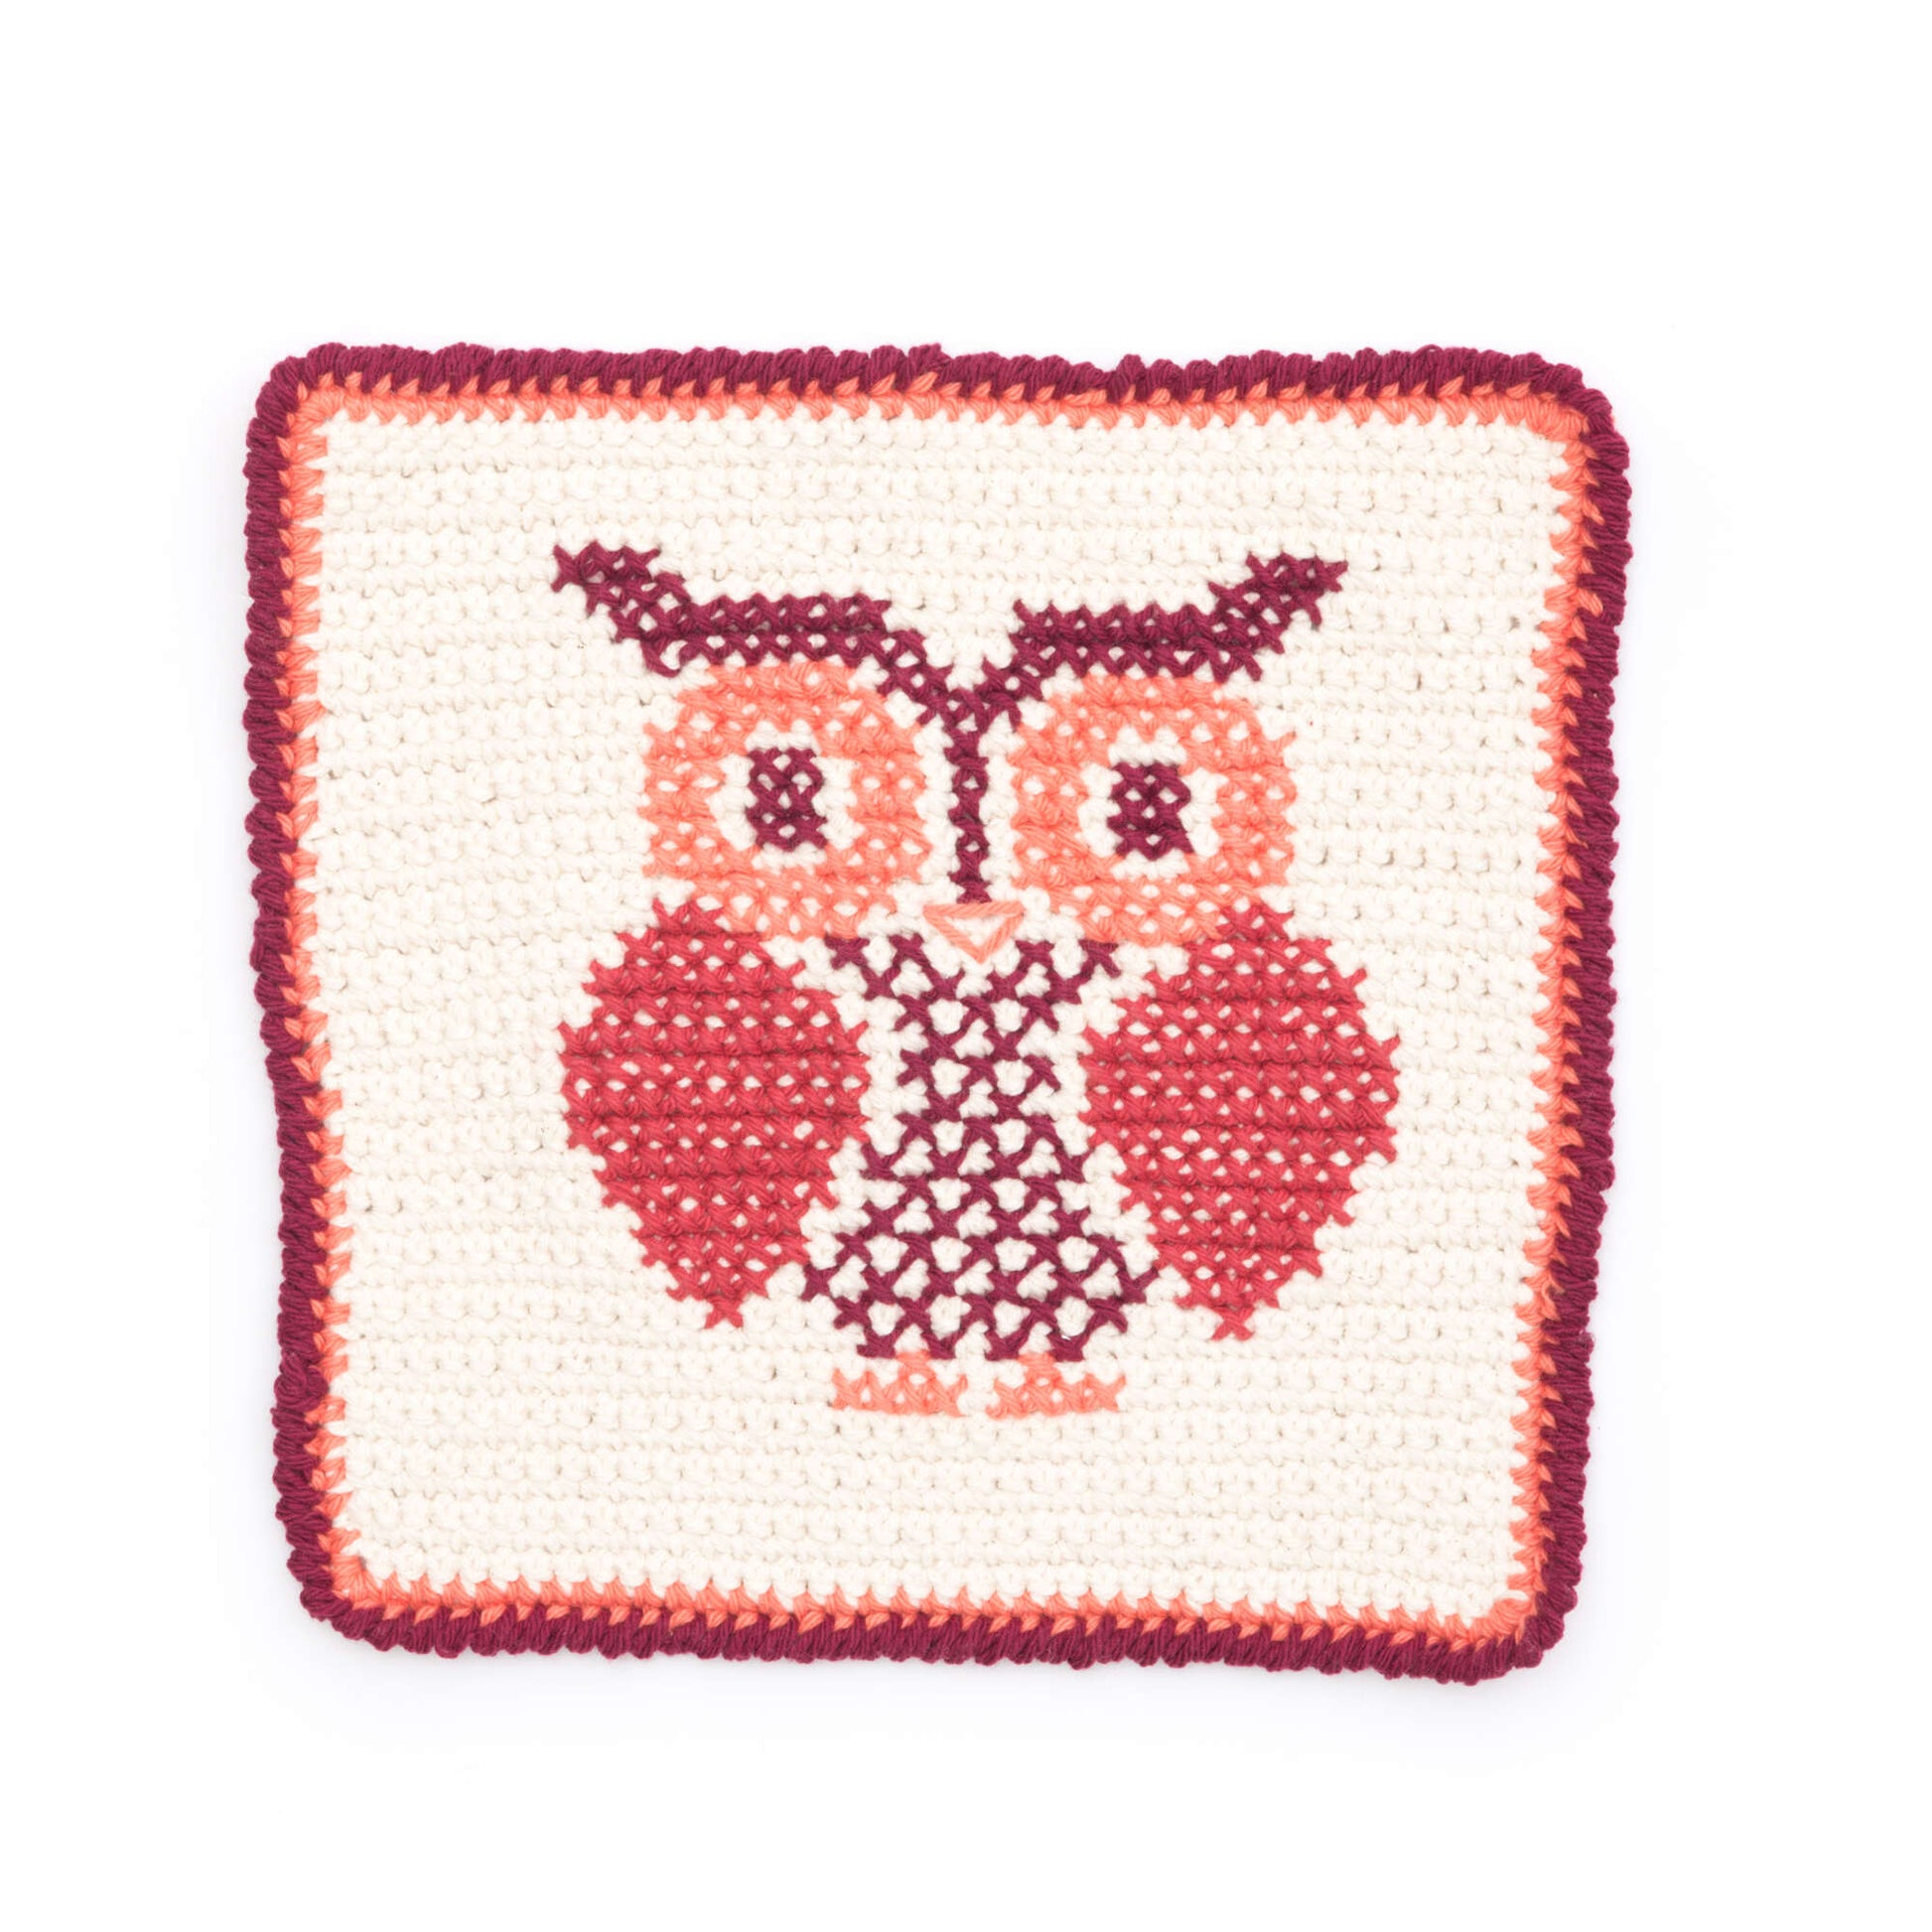 Free Lily Sugar'n Cream Owl Cross Stitch Dishcloth Pattern